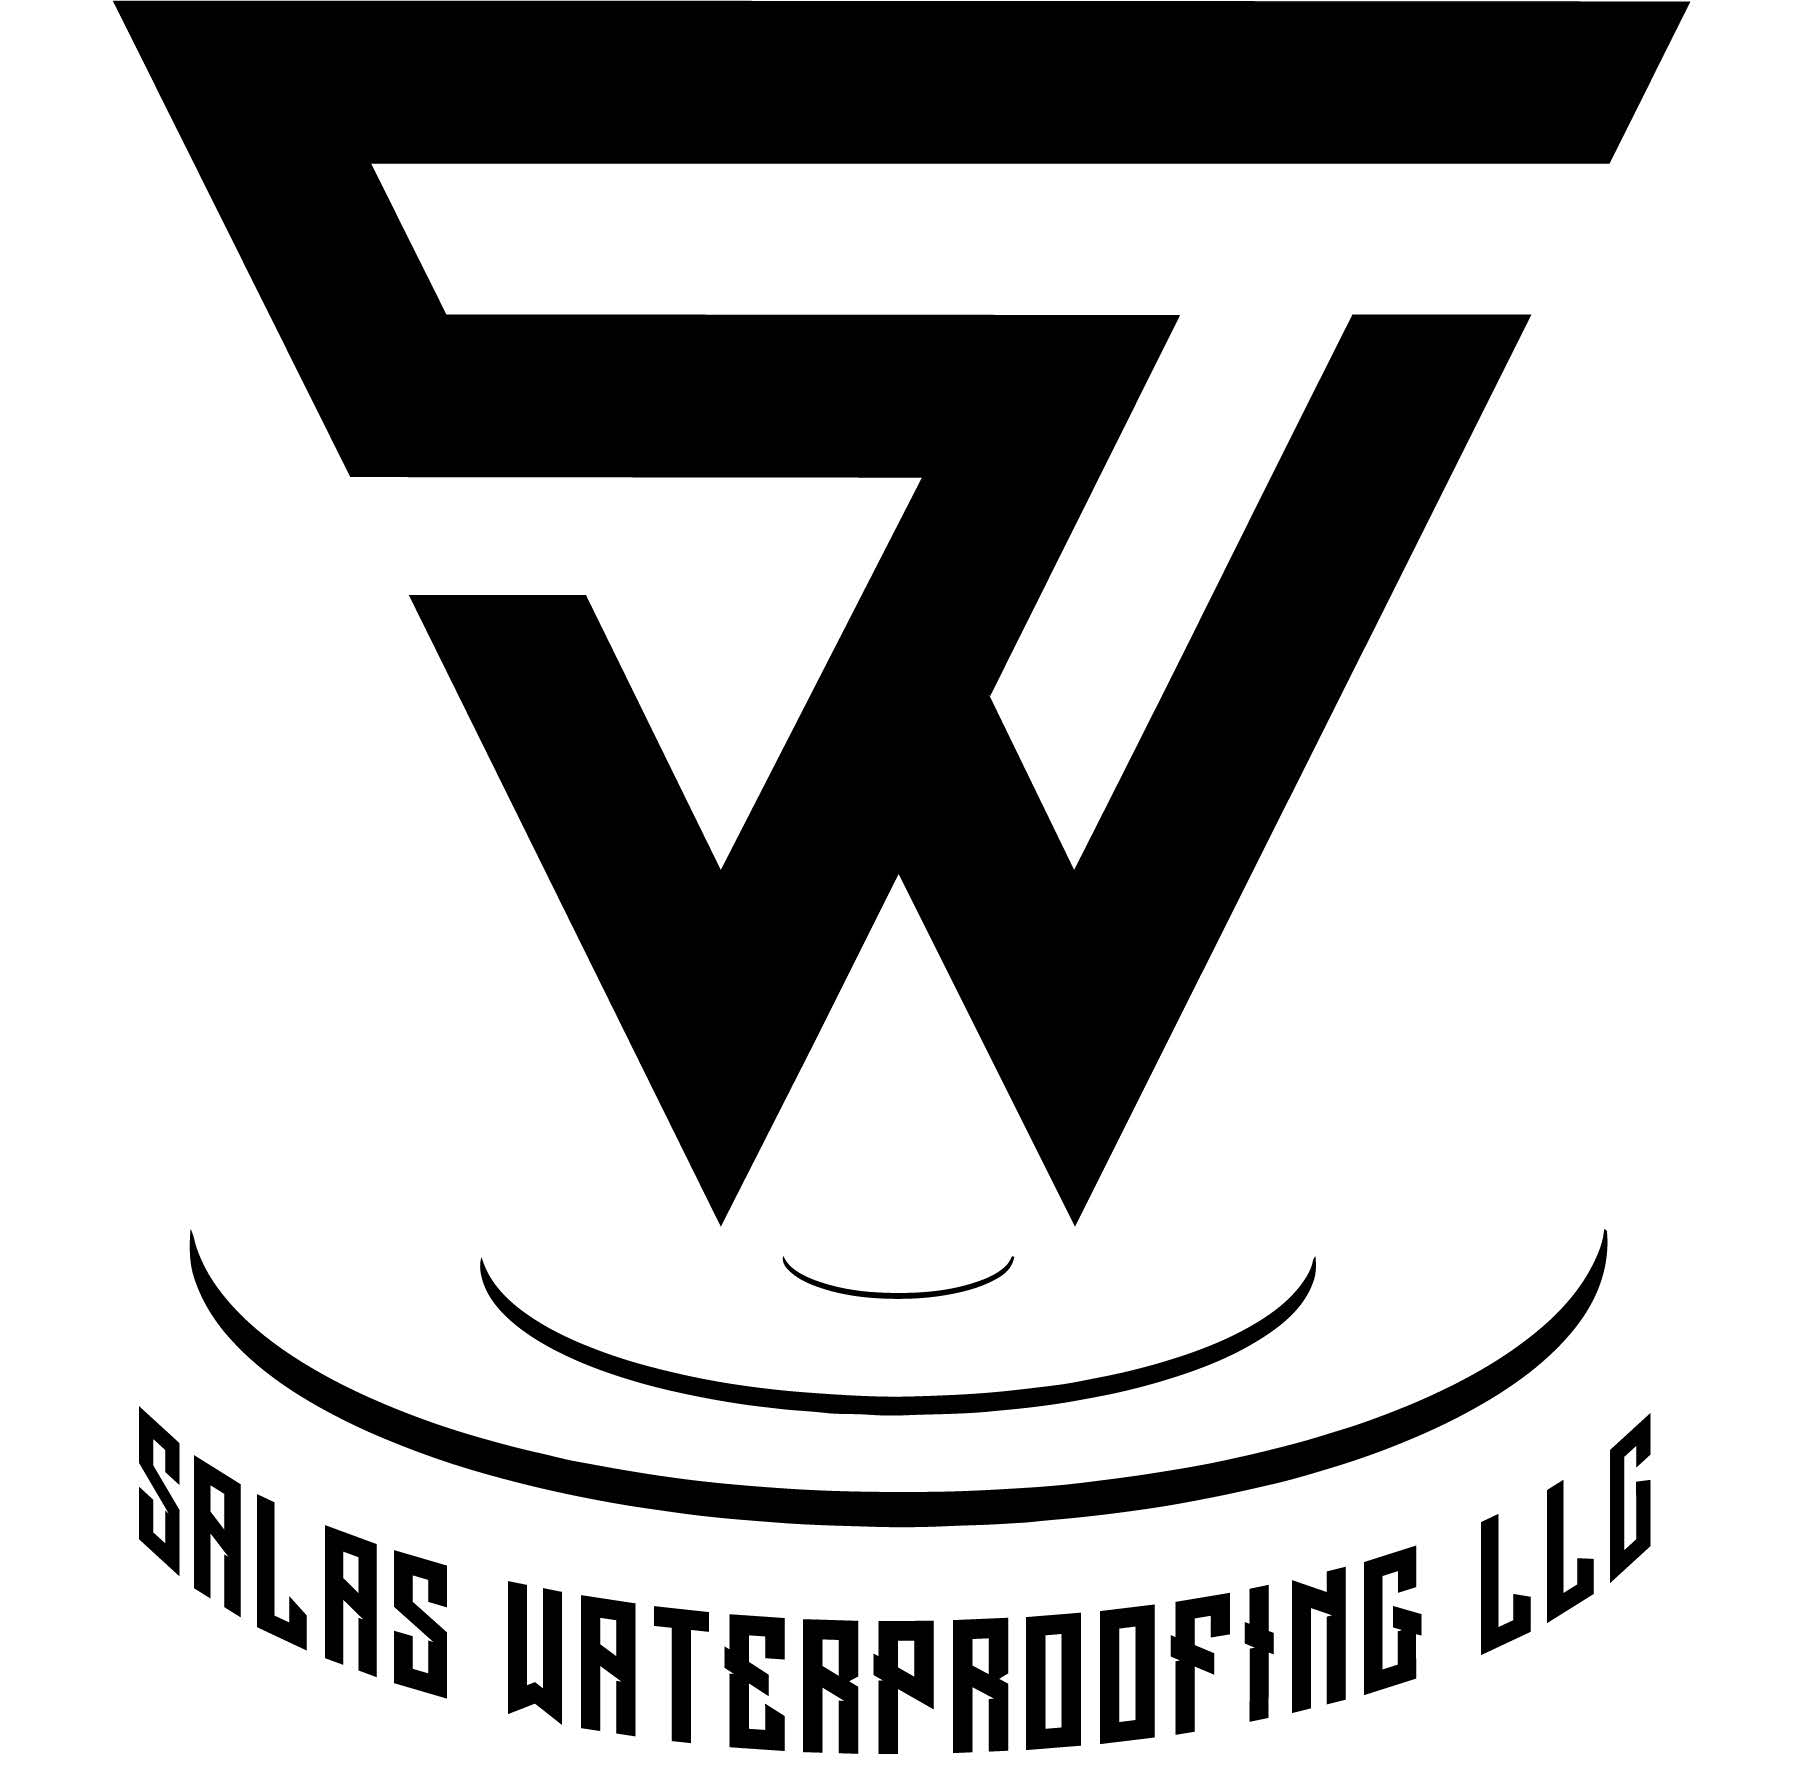 Salas Waterproofing